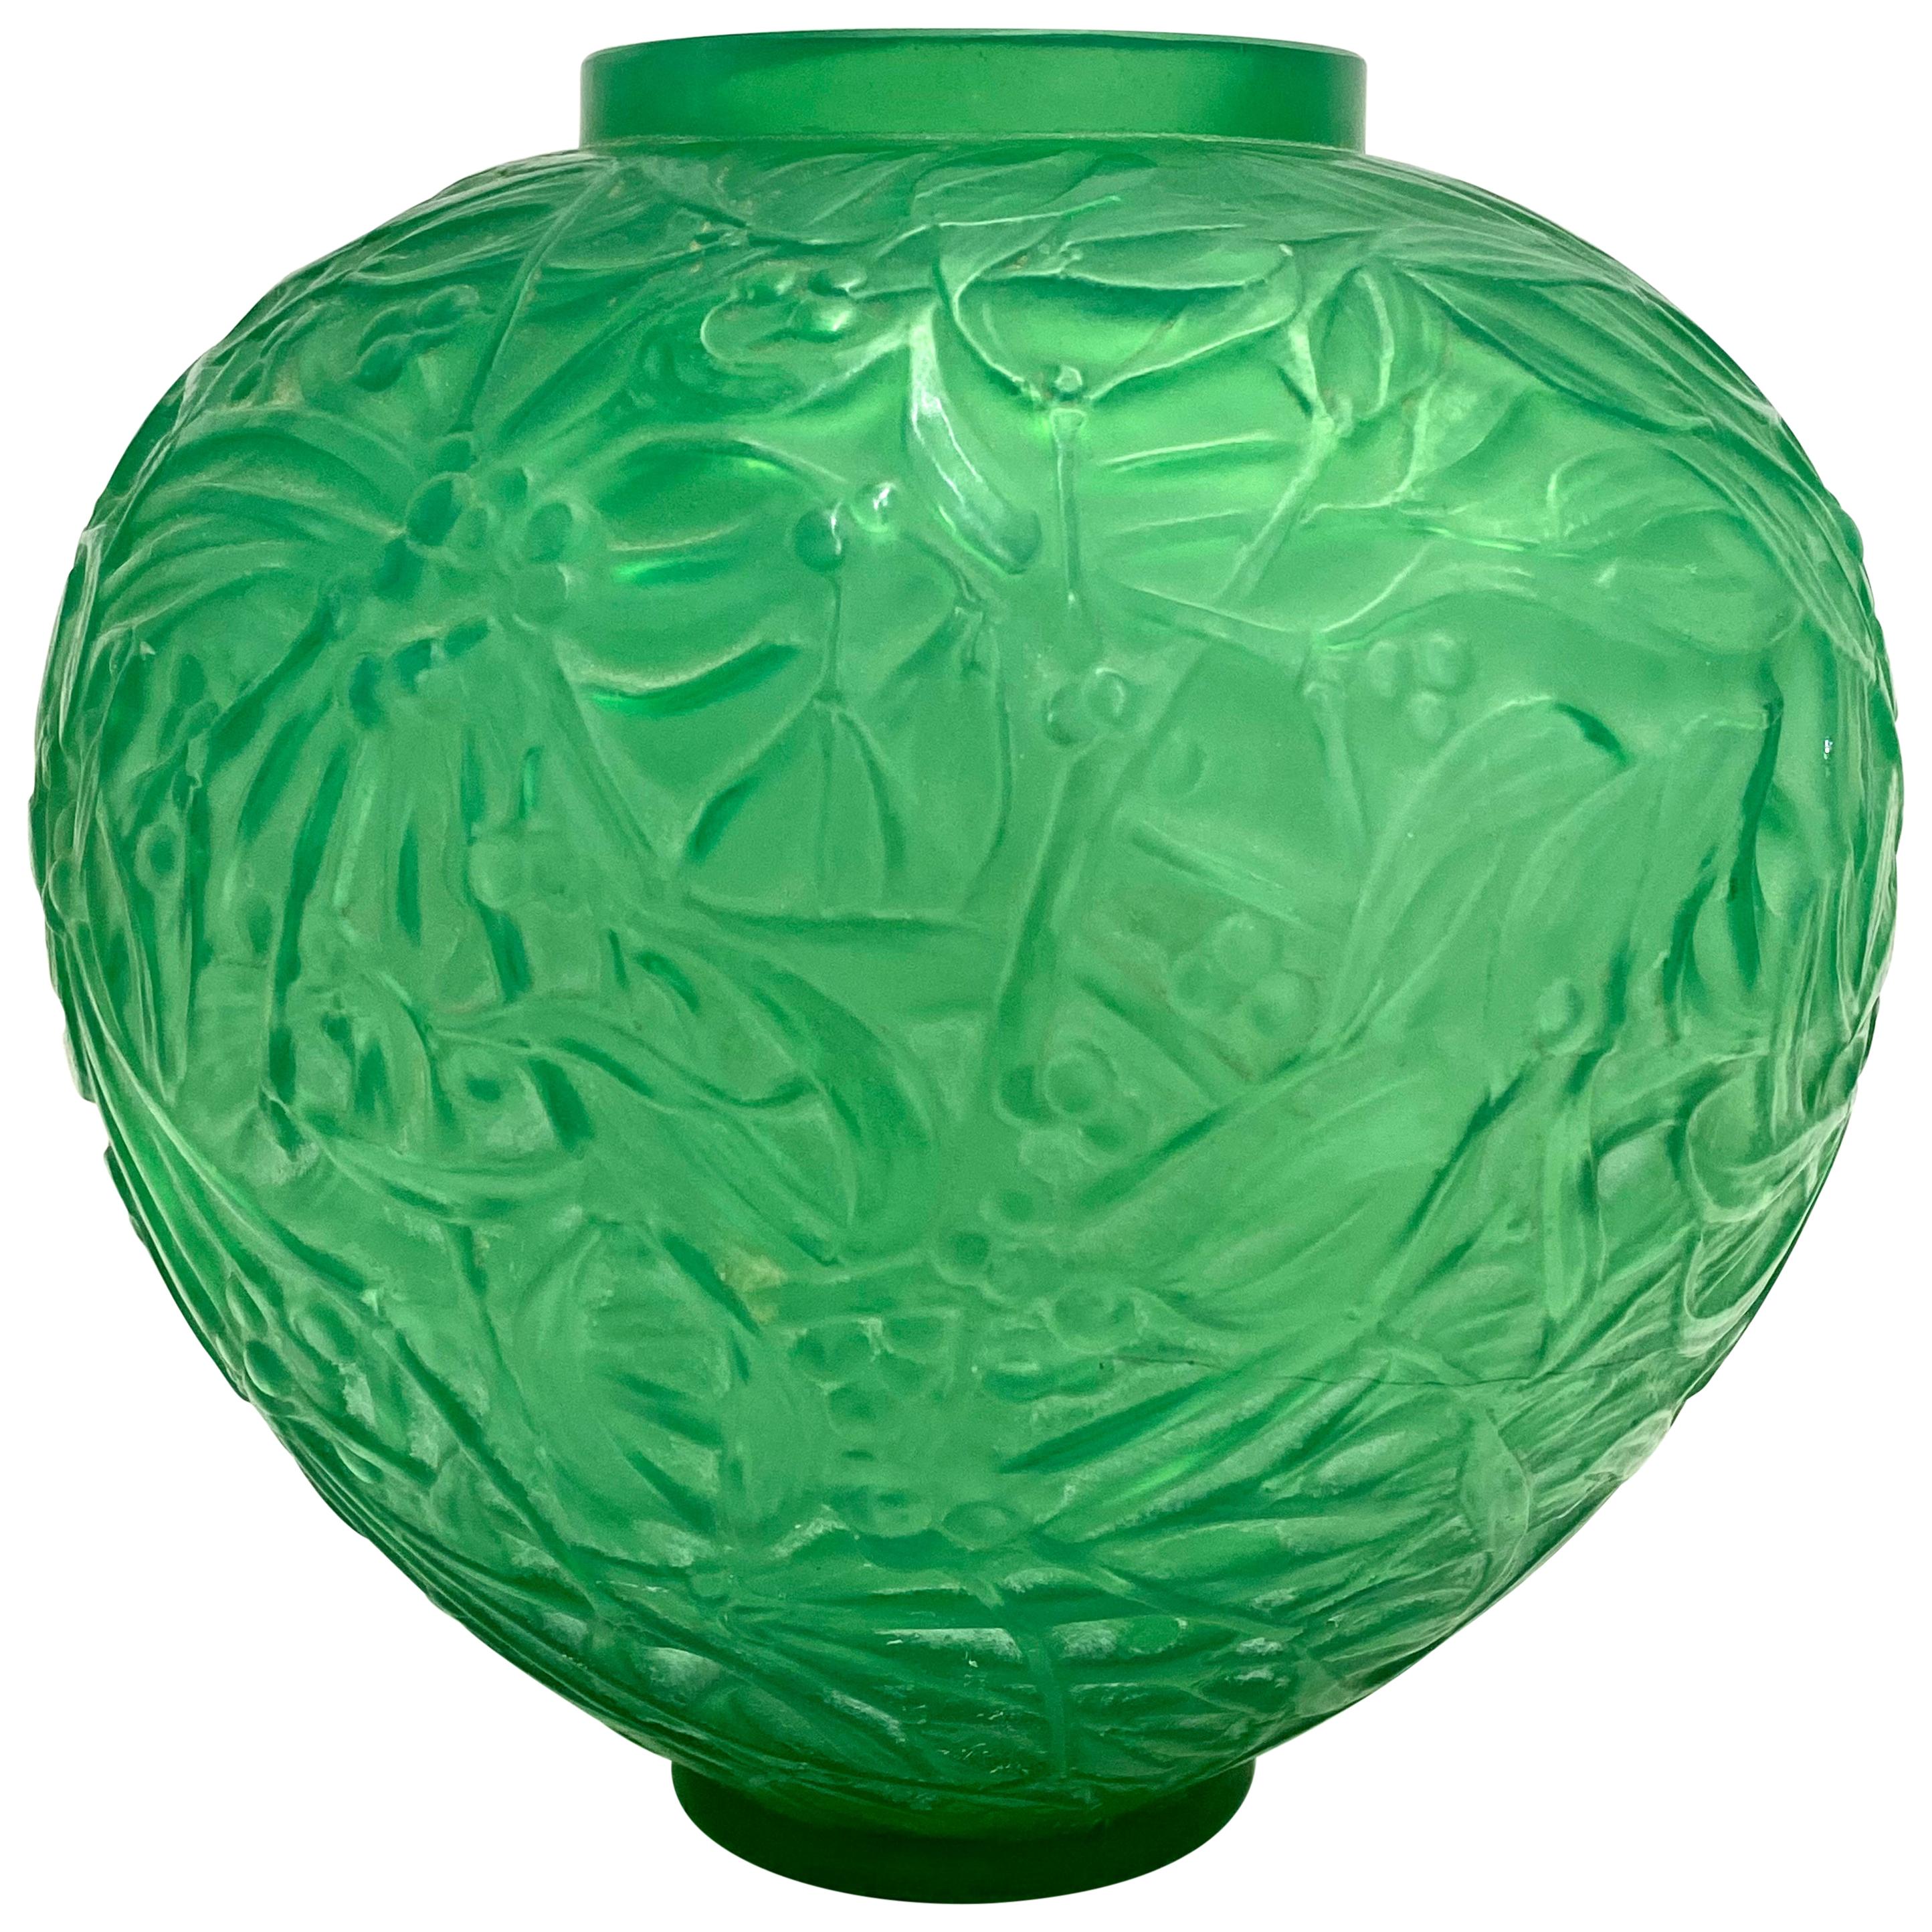 1920 René Lalique Gui Vase in Triple Cased Jade Green Glass Mistletoe